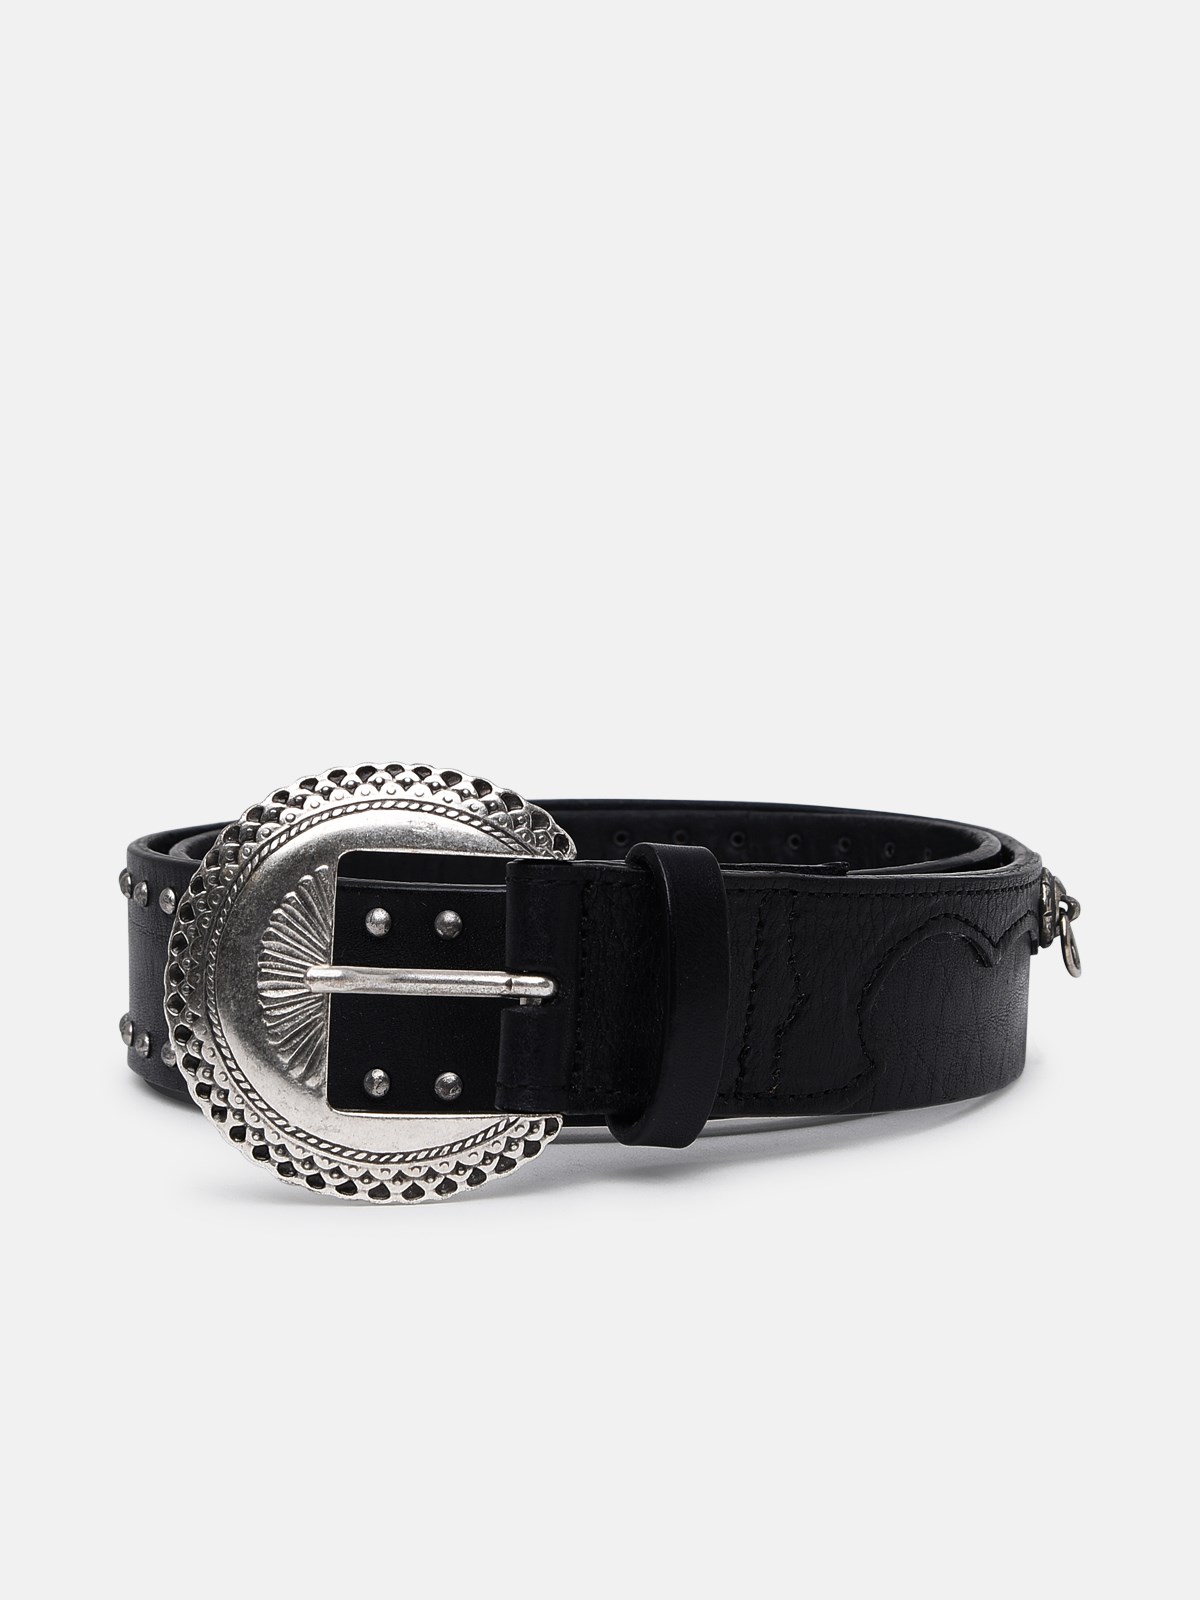 Golden Goose Black Leather Belt On The Black Leather Ring